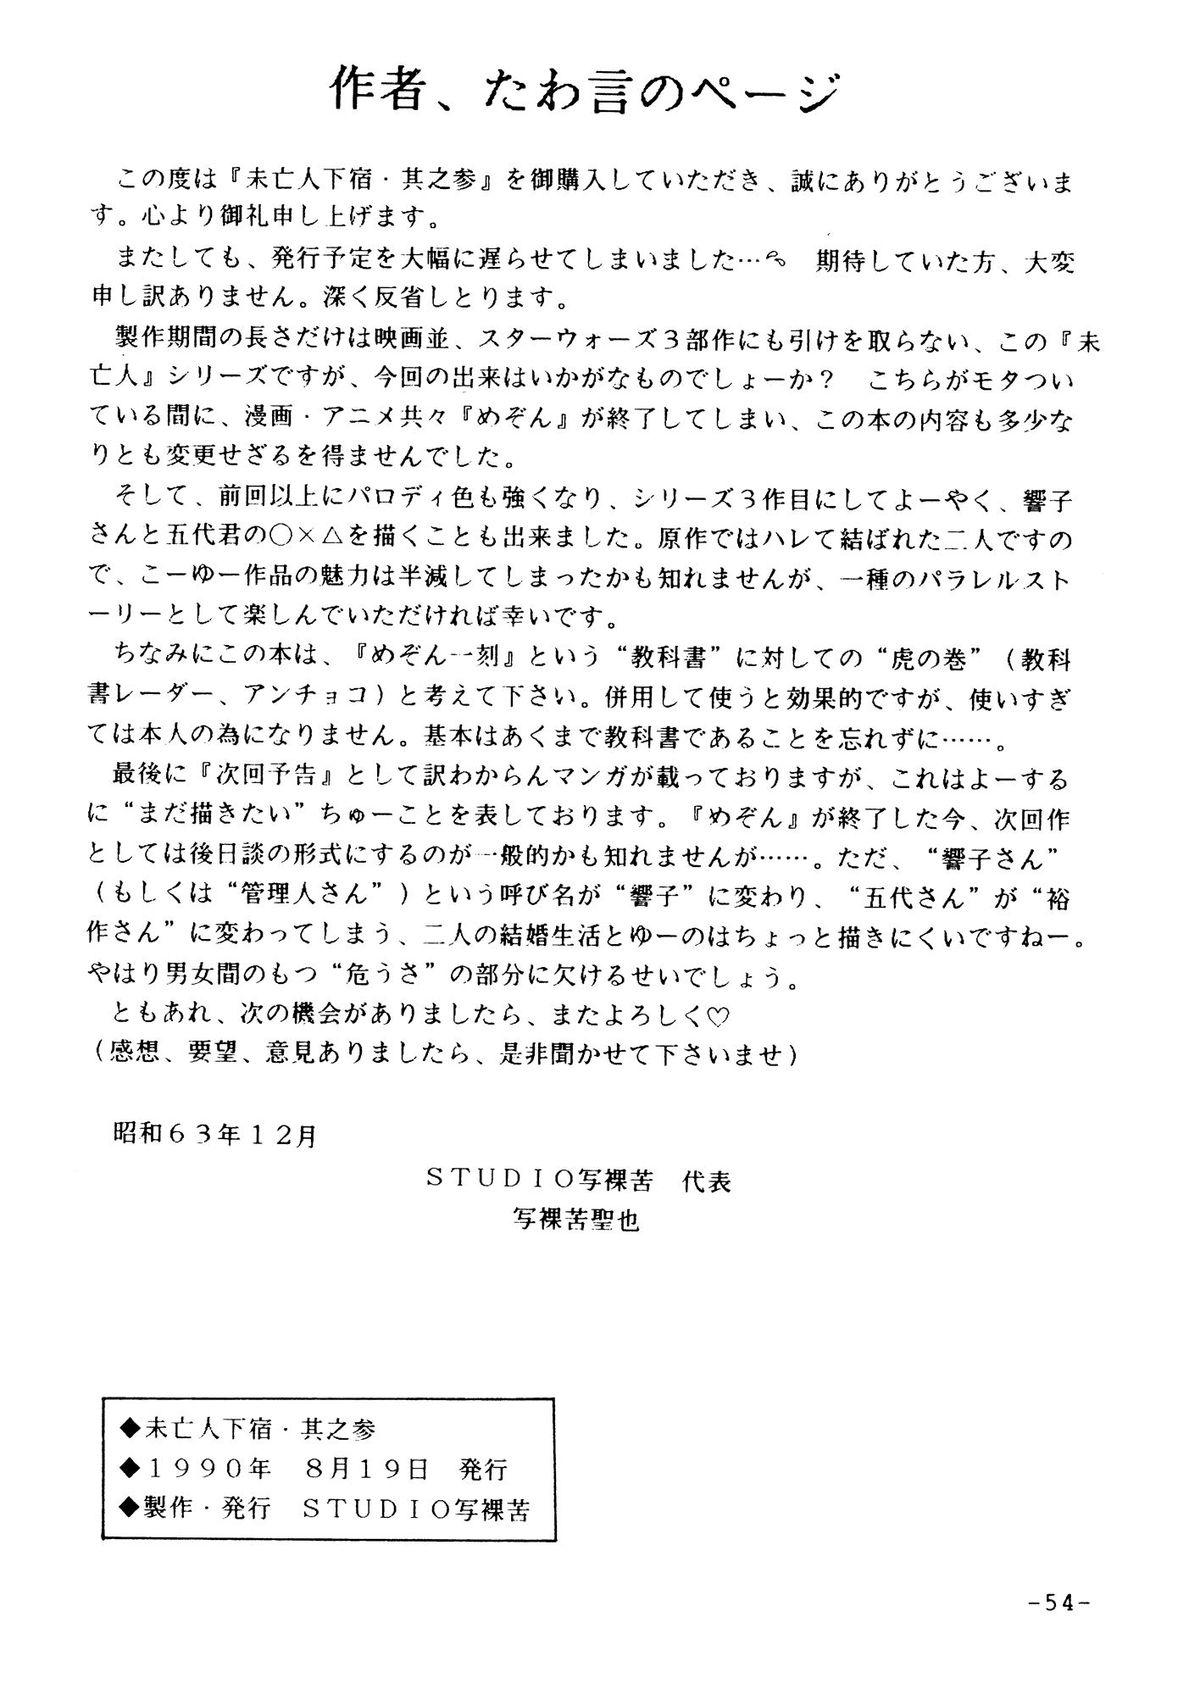 Twerk Mibojin Geshuku Sono San - Maison ikkoku Ex Gf - Page 51